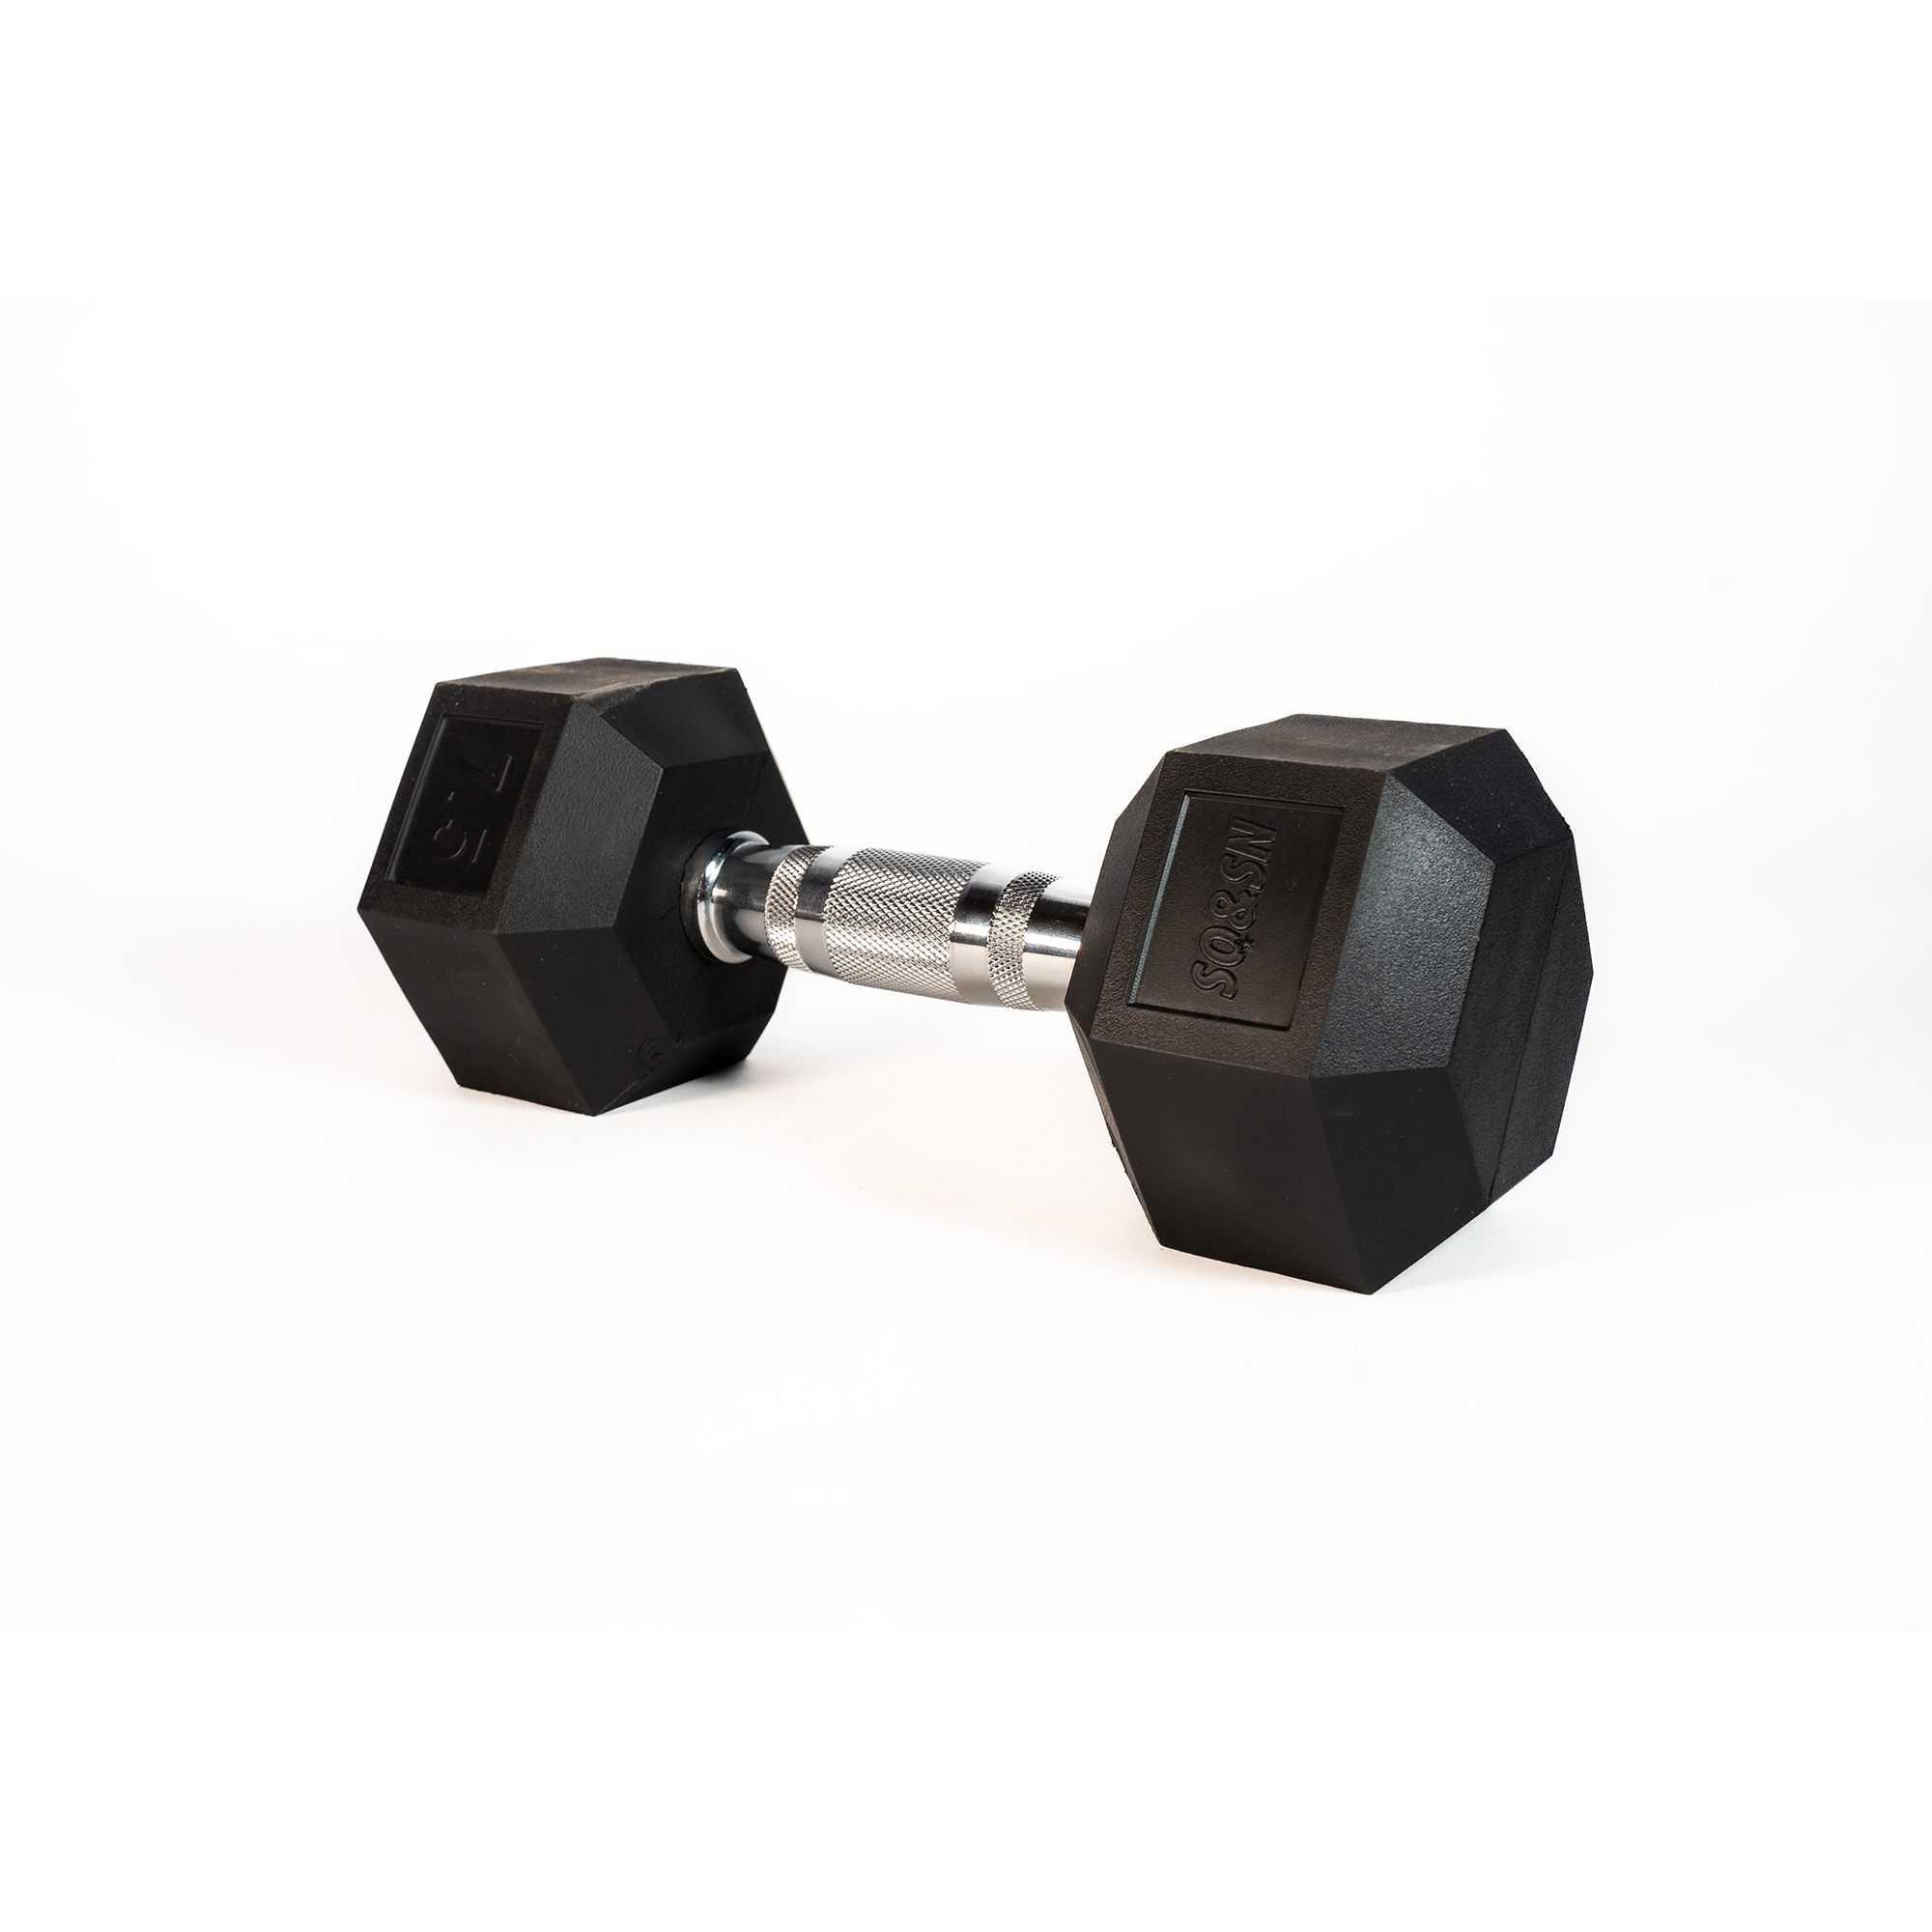 Brug SQ&SN Hexagon Håndvægt (7,5 kg) med forkromet greb. Udstyr til crossfit træning, styrketræning og funktionel træning til en forbedret oplevelse